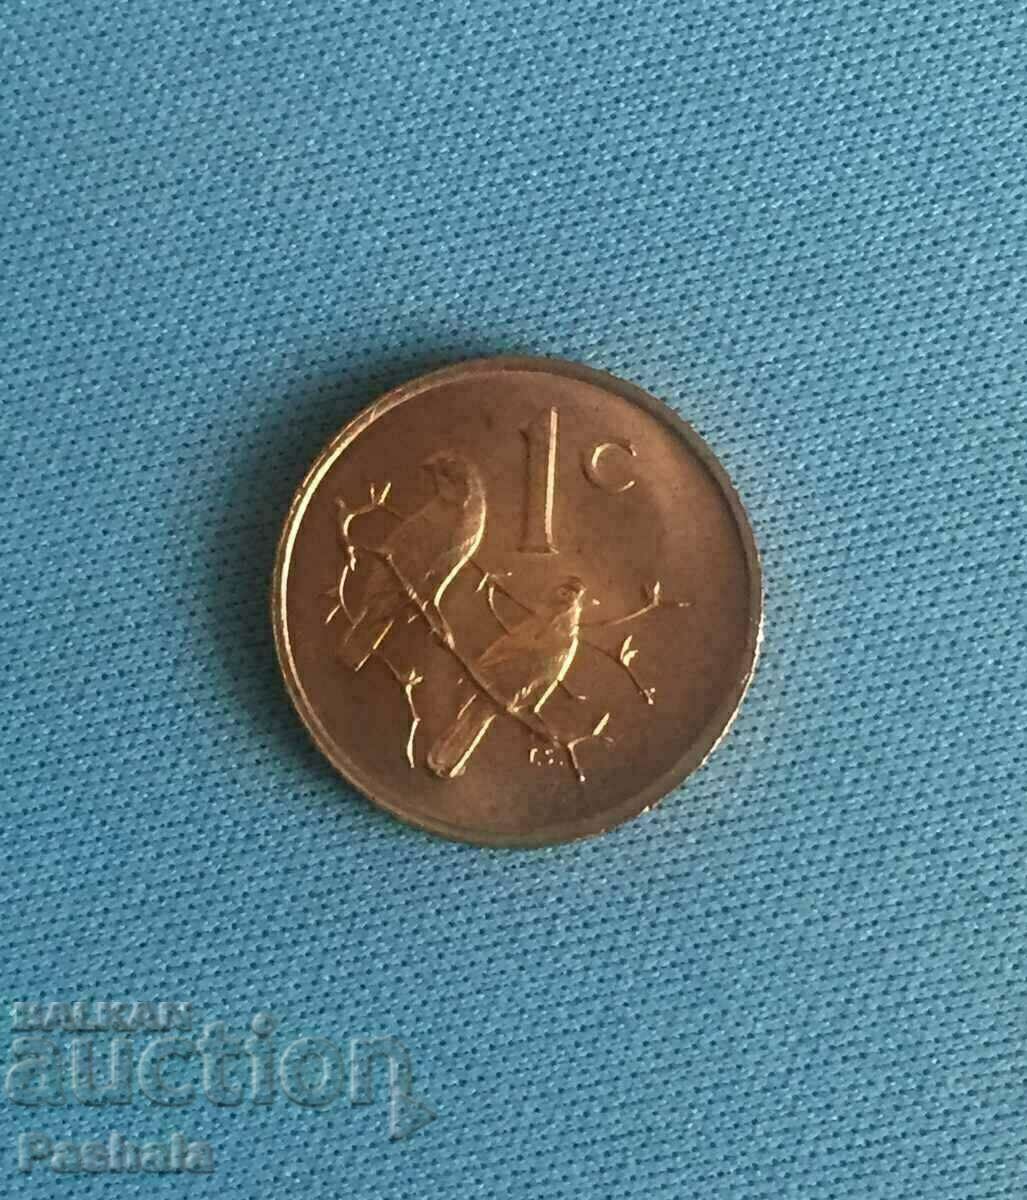 Africa de Sud 1 cent 1969